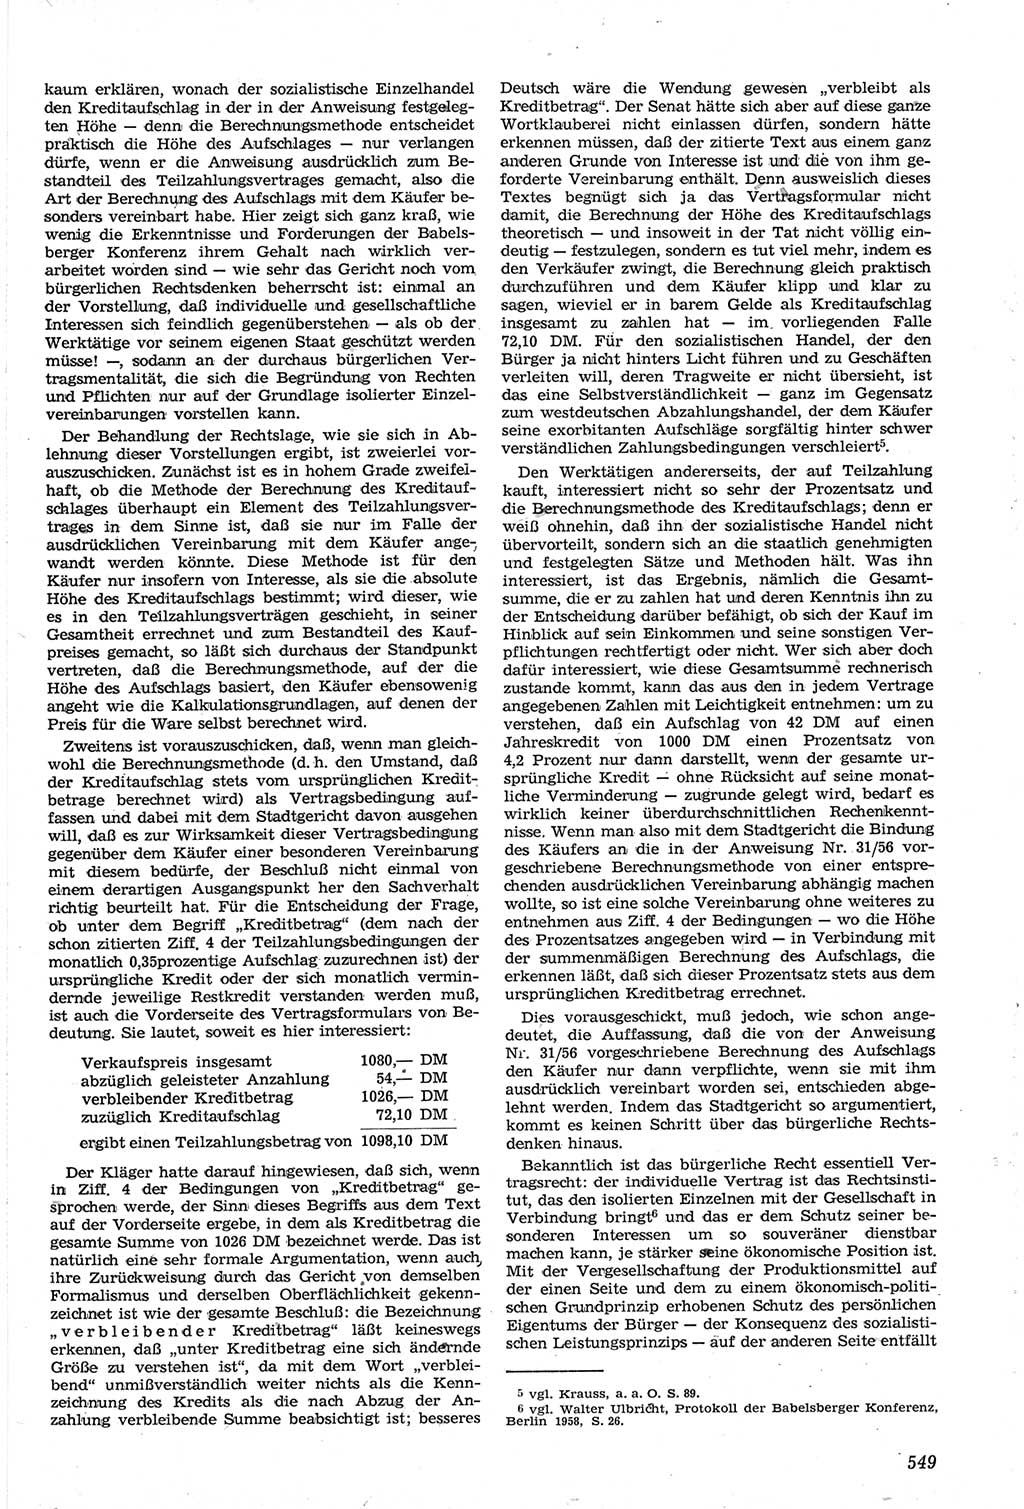 Neue Justiz (NJ), Zeitschrift für Recht und Rechtswissenschaft [Deutsche Demokratische Republik (DDR)], 14. Jahrgang 1960, Seite 549 (NJ DDR 1960, S. 549)